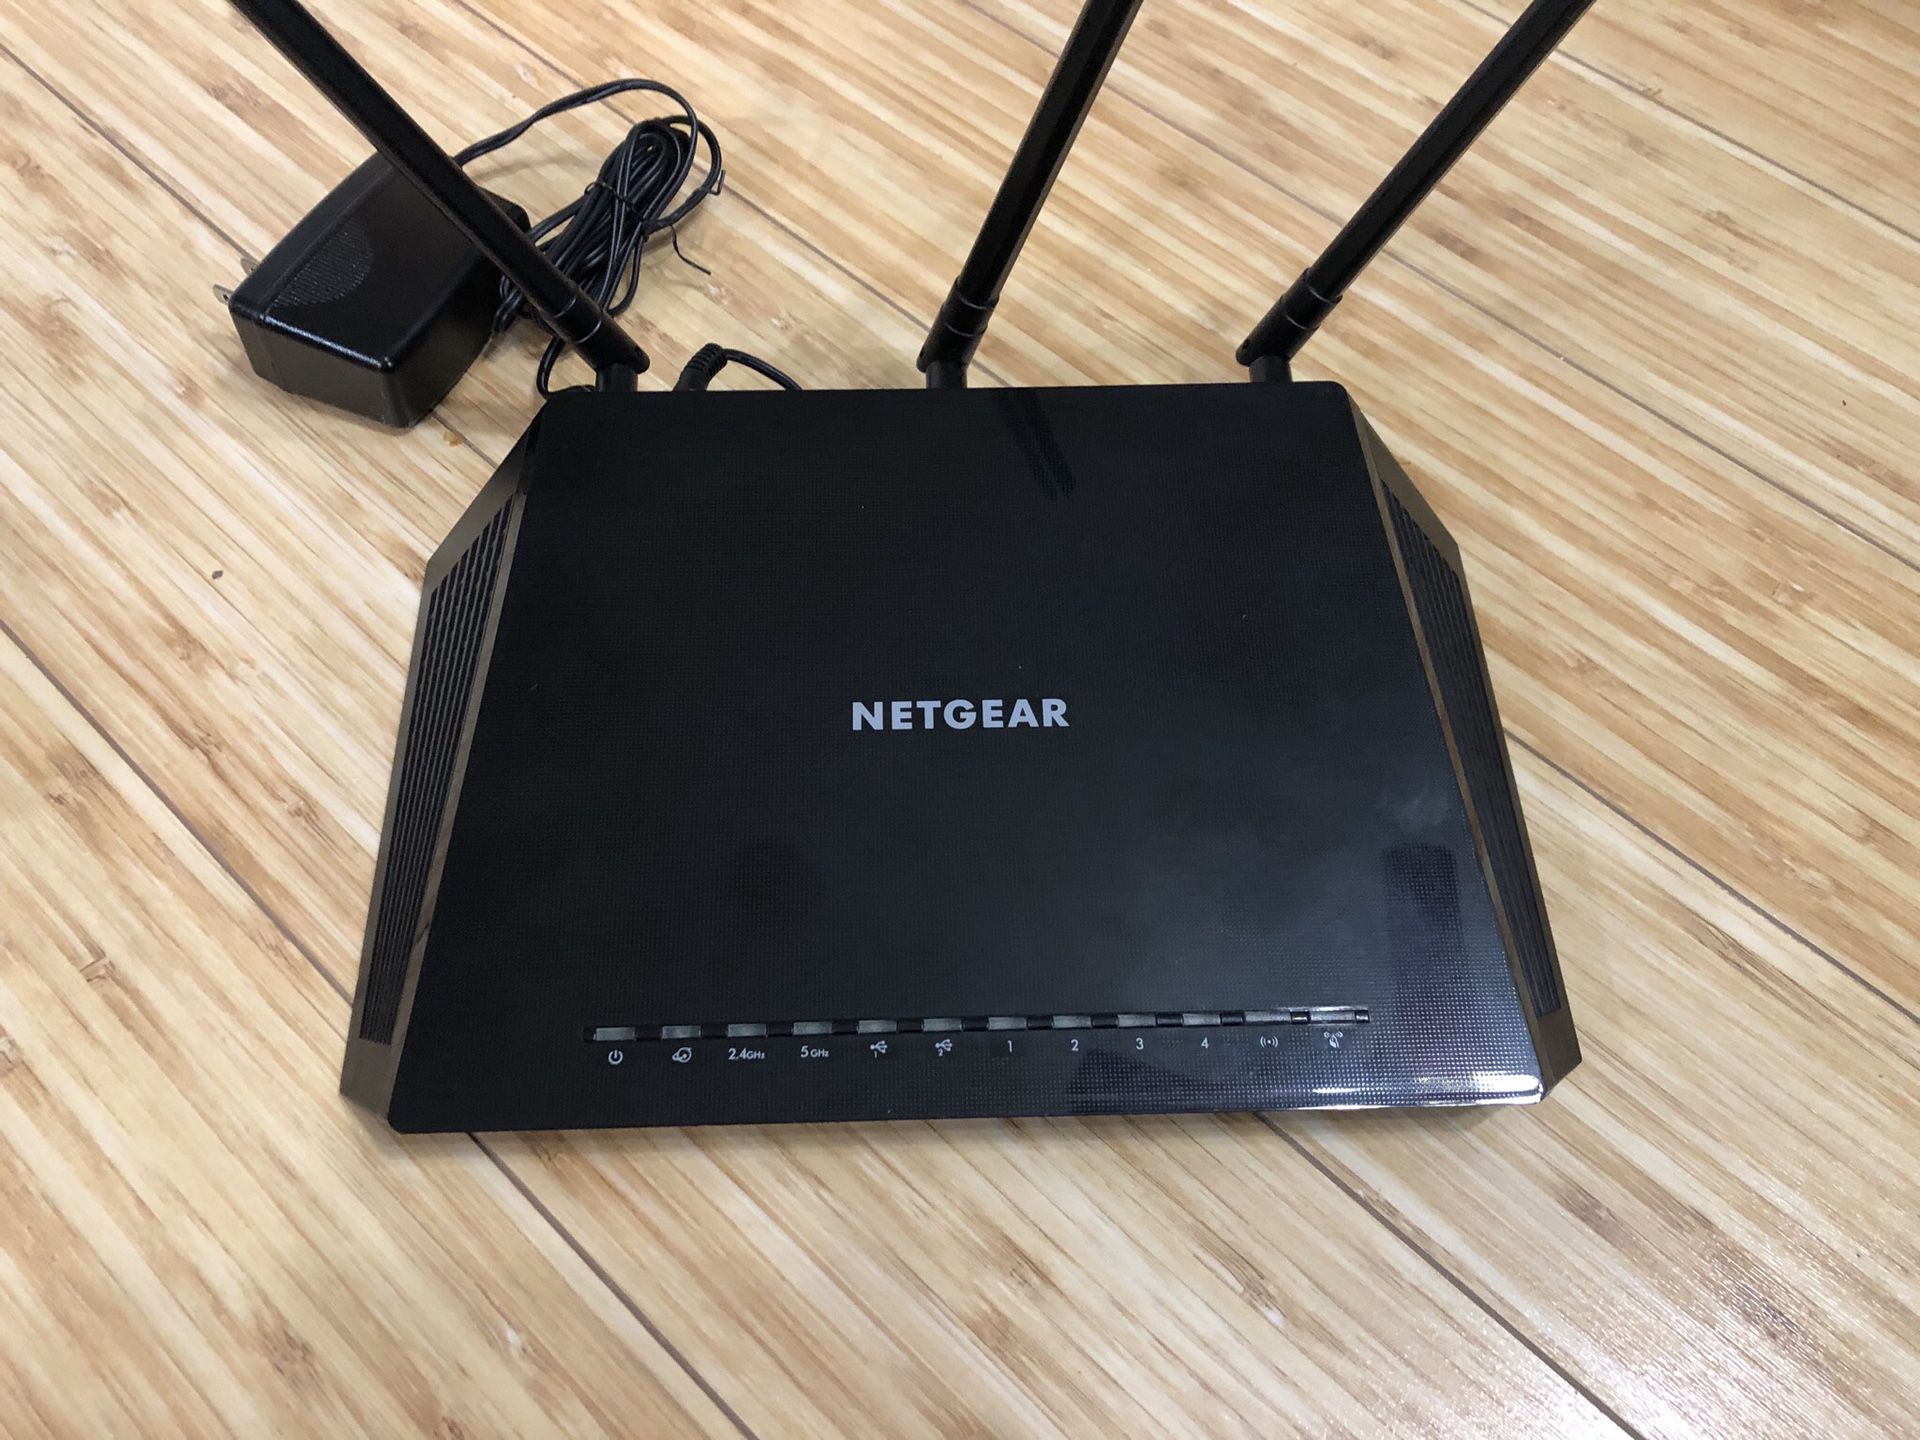 Netgear Smart WiFi Router and Netgear Modem